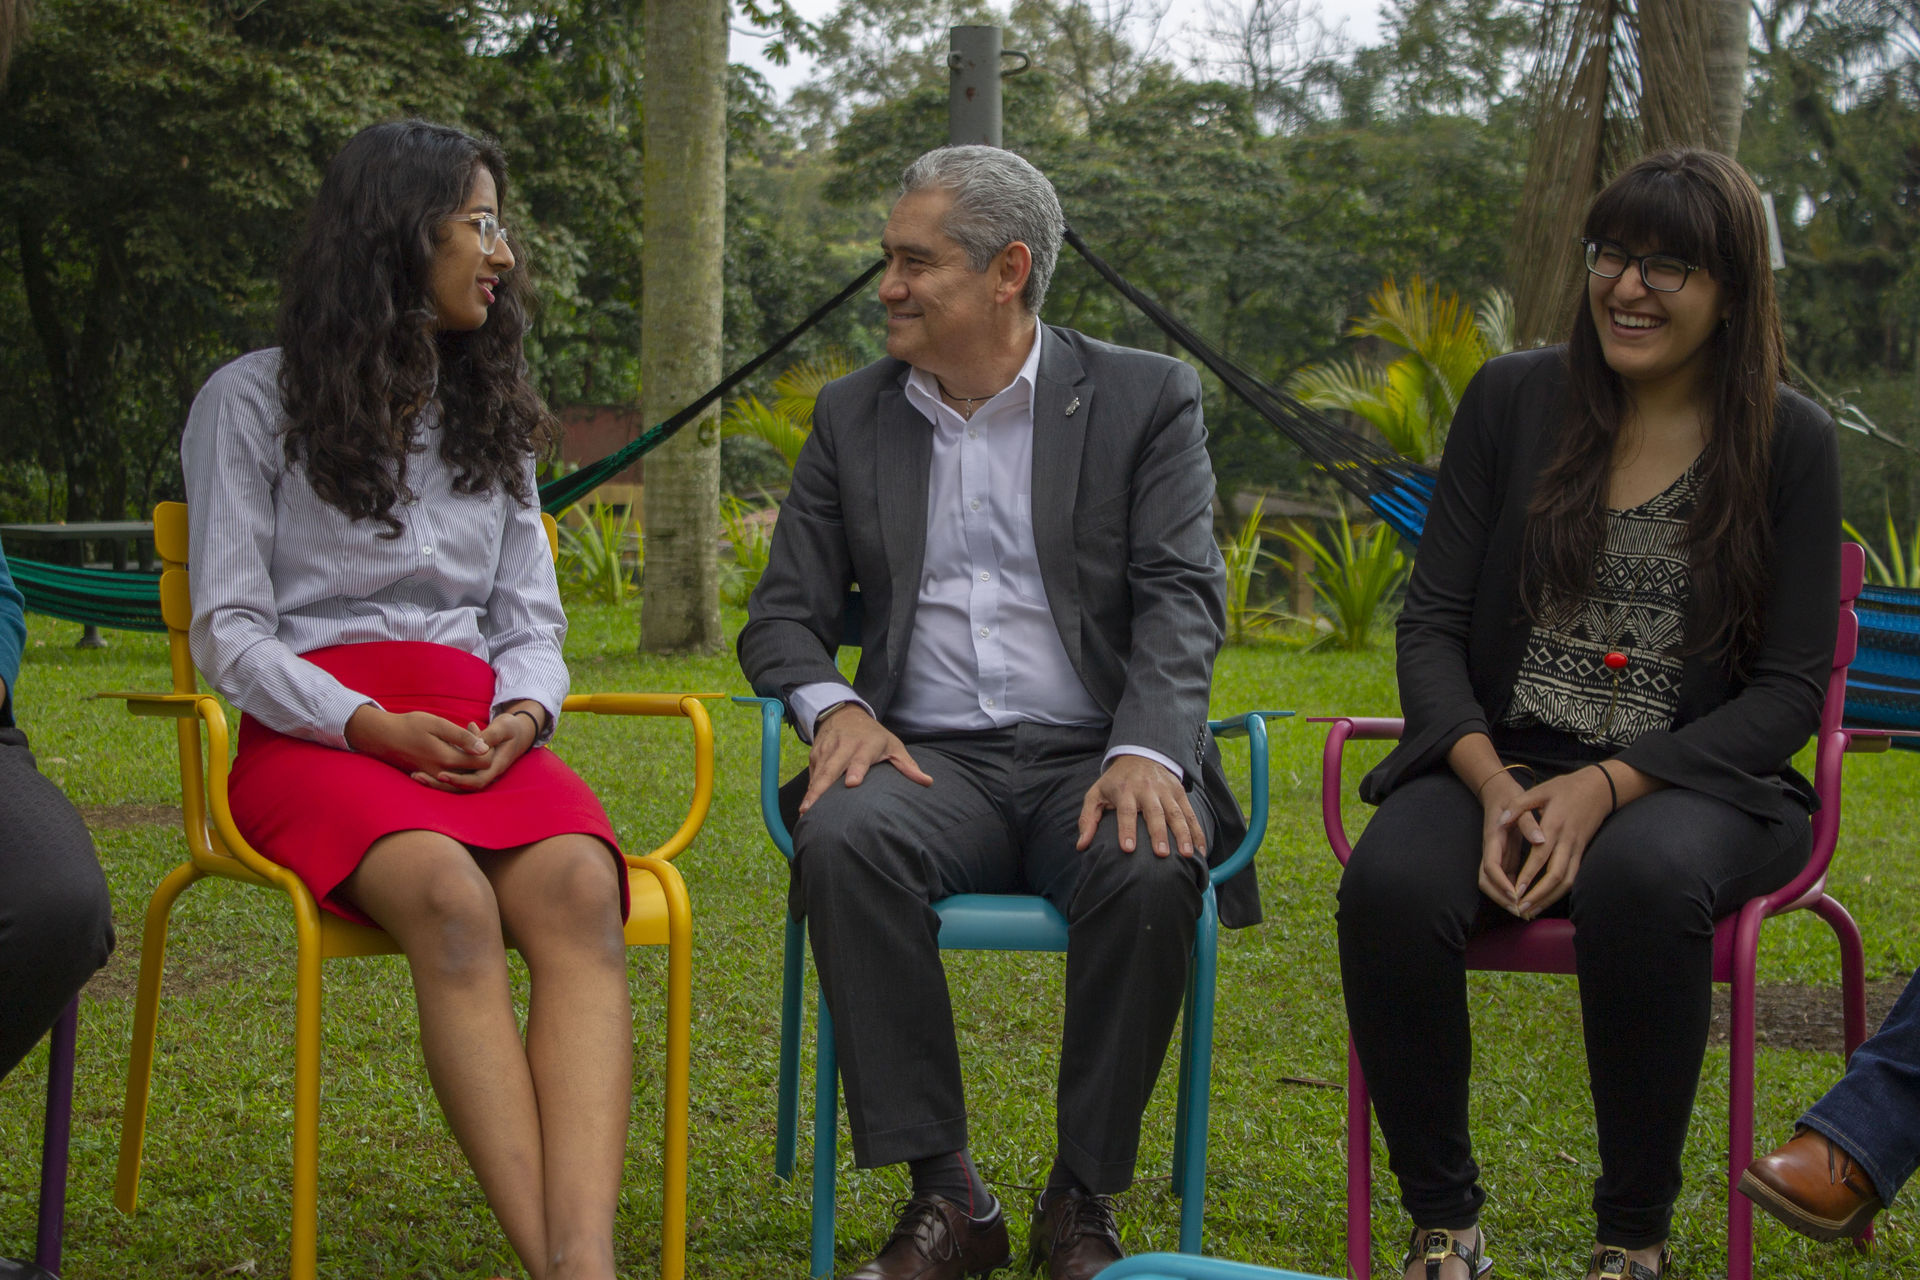 Gracias al TEC campus Veracruz y en colaboración con el programa Global Teaching Labs del MIT, Meghana y Aliza son ahora miembros de ambas universidades.